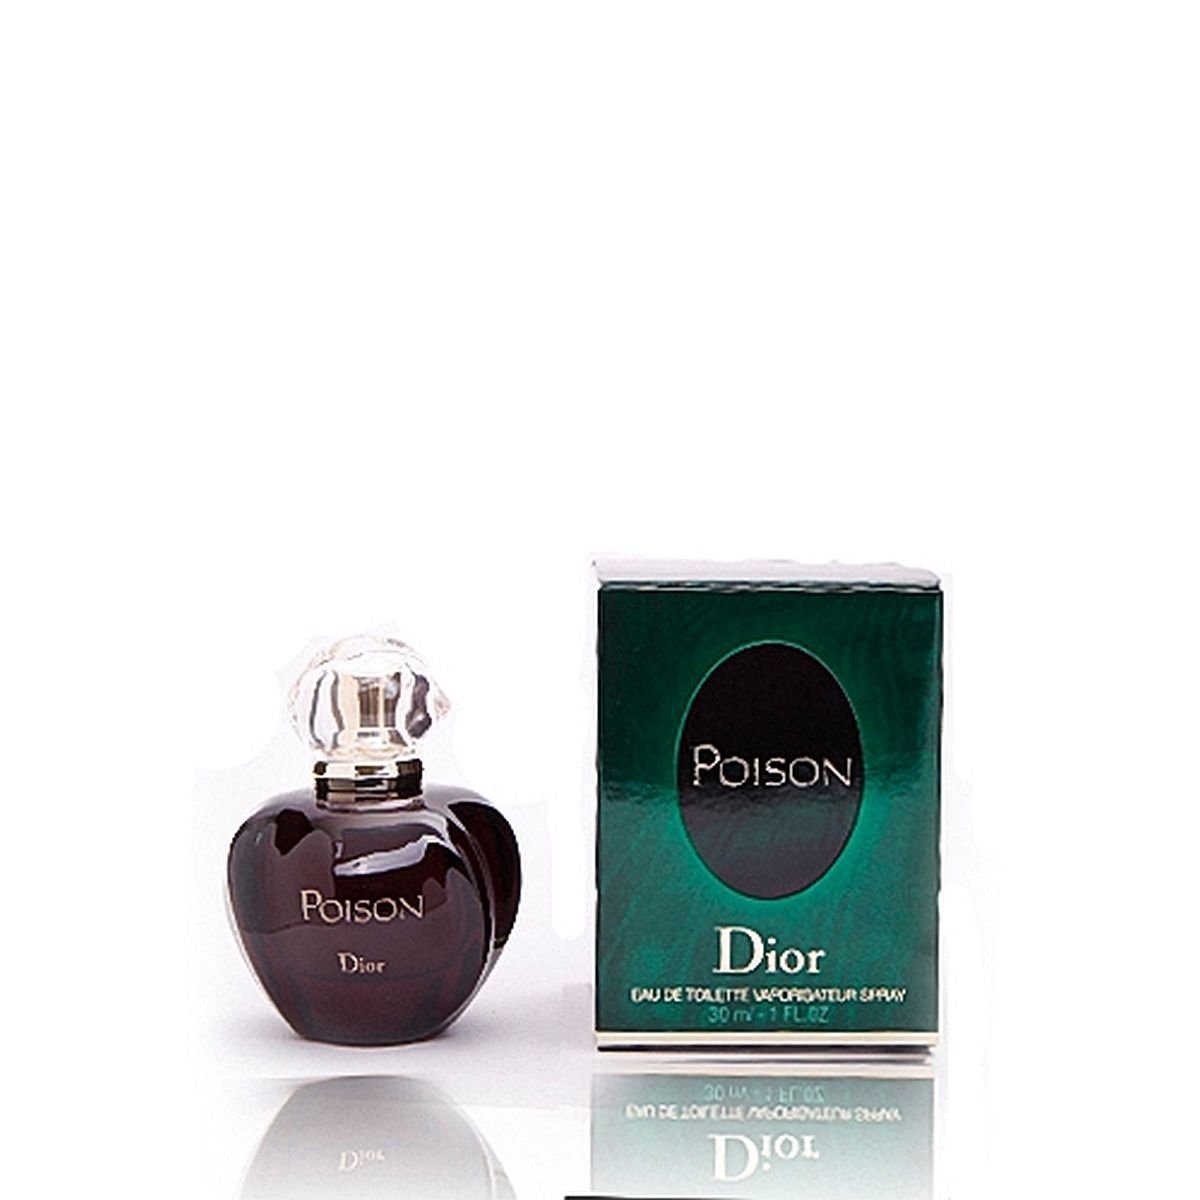 Christian Dior Eau 30 de ml Poison Toilette Spray Dior Eau Toilette de